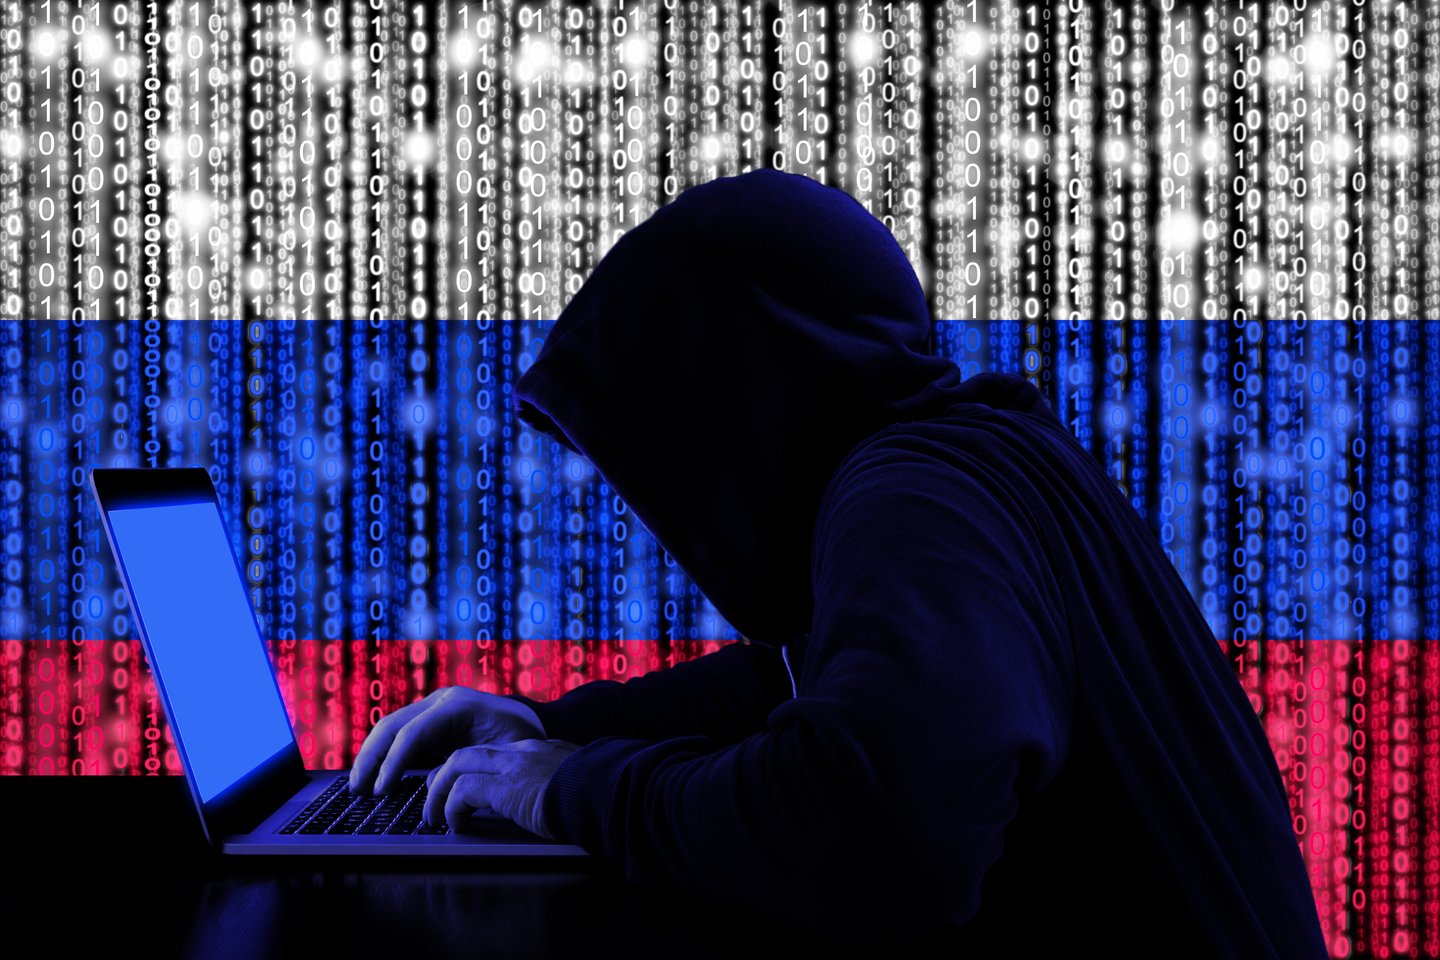  Rusija penktadienį pareiškė gavusi JAV prašymą ir išardžiusi programišių grupuotę „REvil“, kuri pernai surengė didelio atgarsio sulaukusią kibernetinę ataką prieš IT bendrovę „Kaseya“.<br> 123rf nuotr.